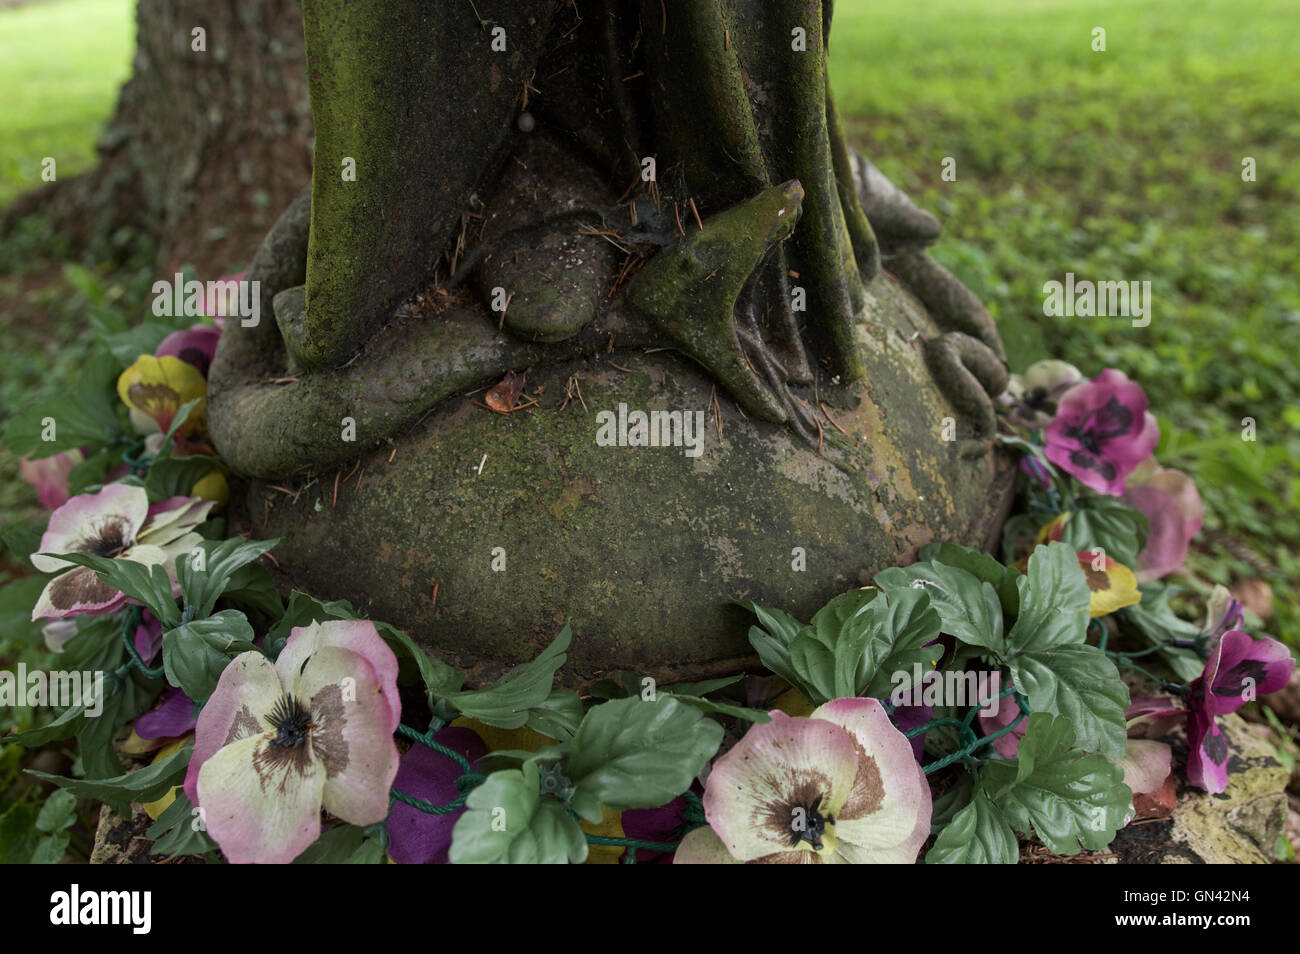 Dettaglio di una statua della Vergine Maria la frantumazione di un serpente che rappresenta il male. Foto Stock